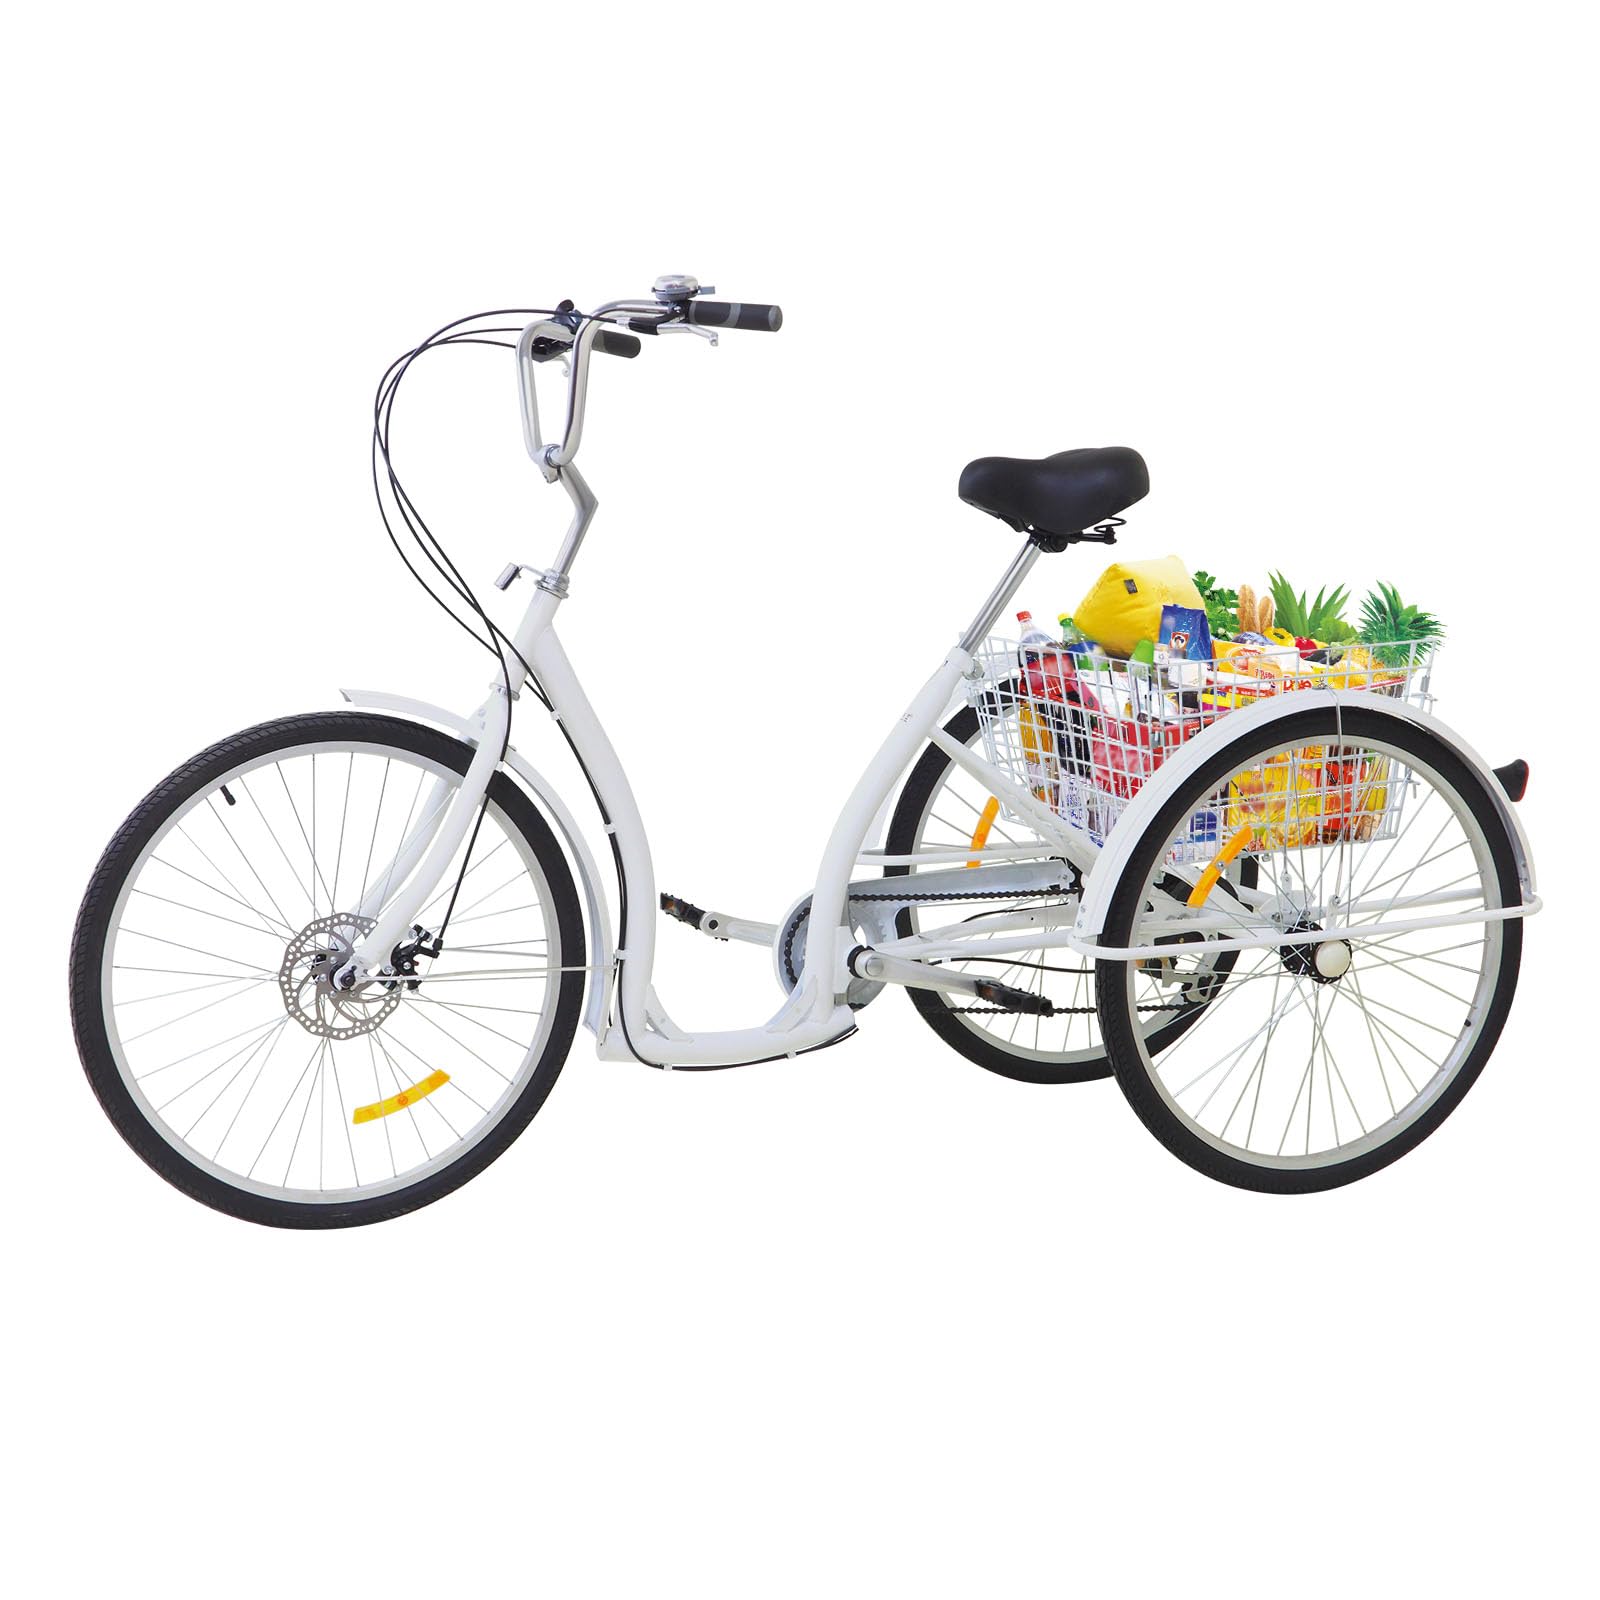 OUKANING 26 Zoll 6-Gang Dreirad mit tiefeinstieg für Erwachsene Senioren 3 Rad Fahrrad Erwachsene Dreirad Tricycle mit Einkaufskorb weiß,Belastung: 120 kg,Sitzhöhe: 84–96 cm